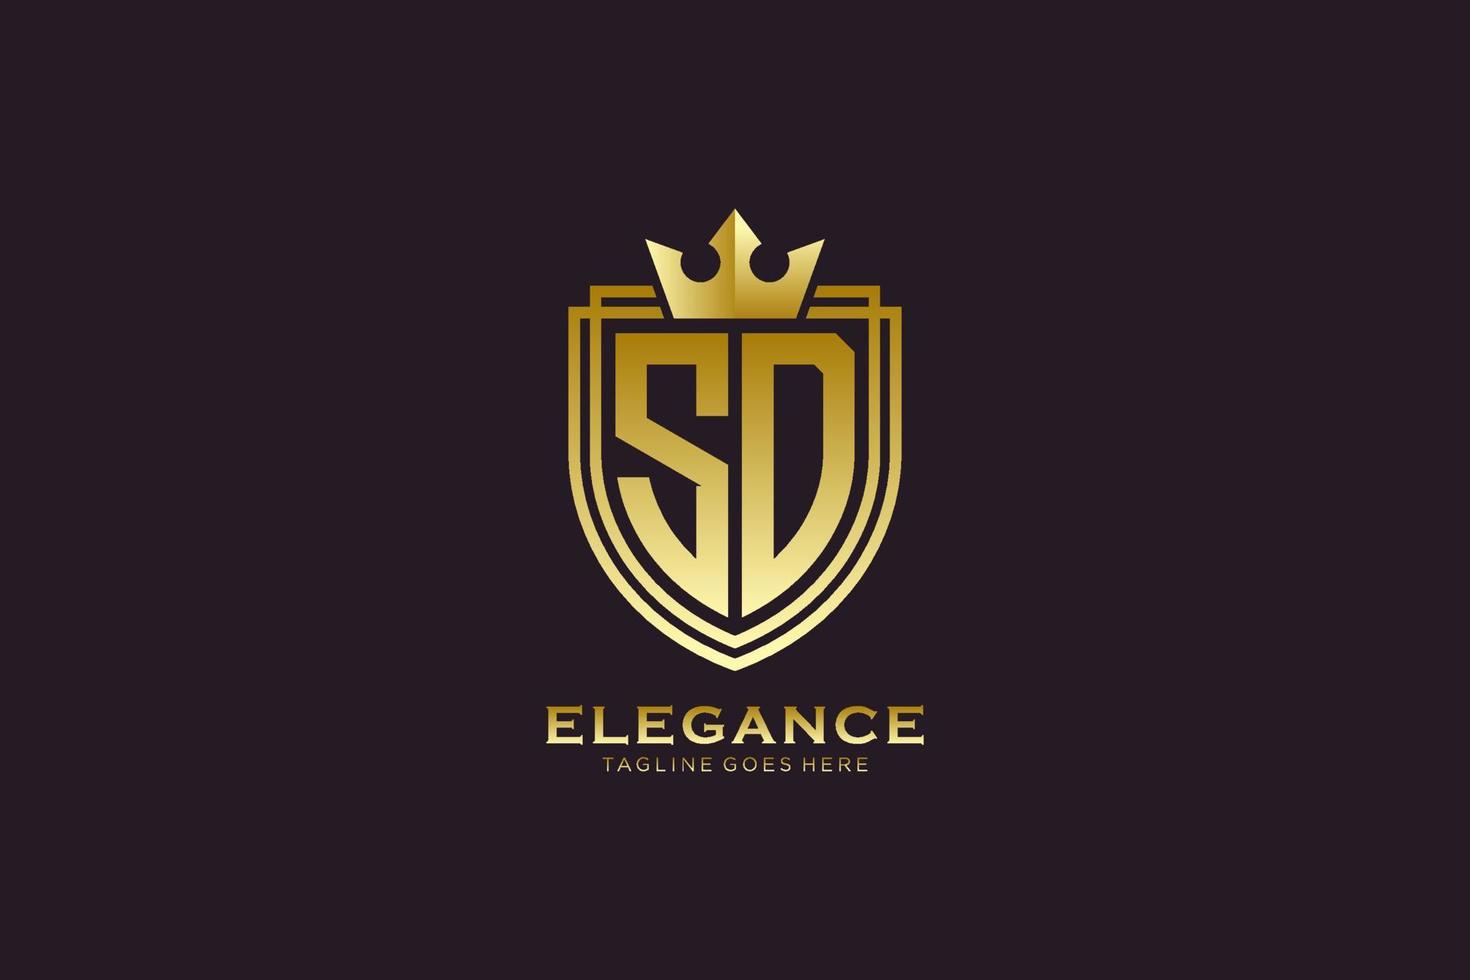 logotipo de monograma de lujo elegante inicial sd o plantilla de placa con pergaminos y corona real - perfecto para proyectos de marca de lujo vector